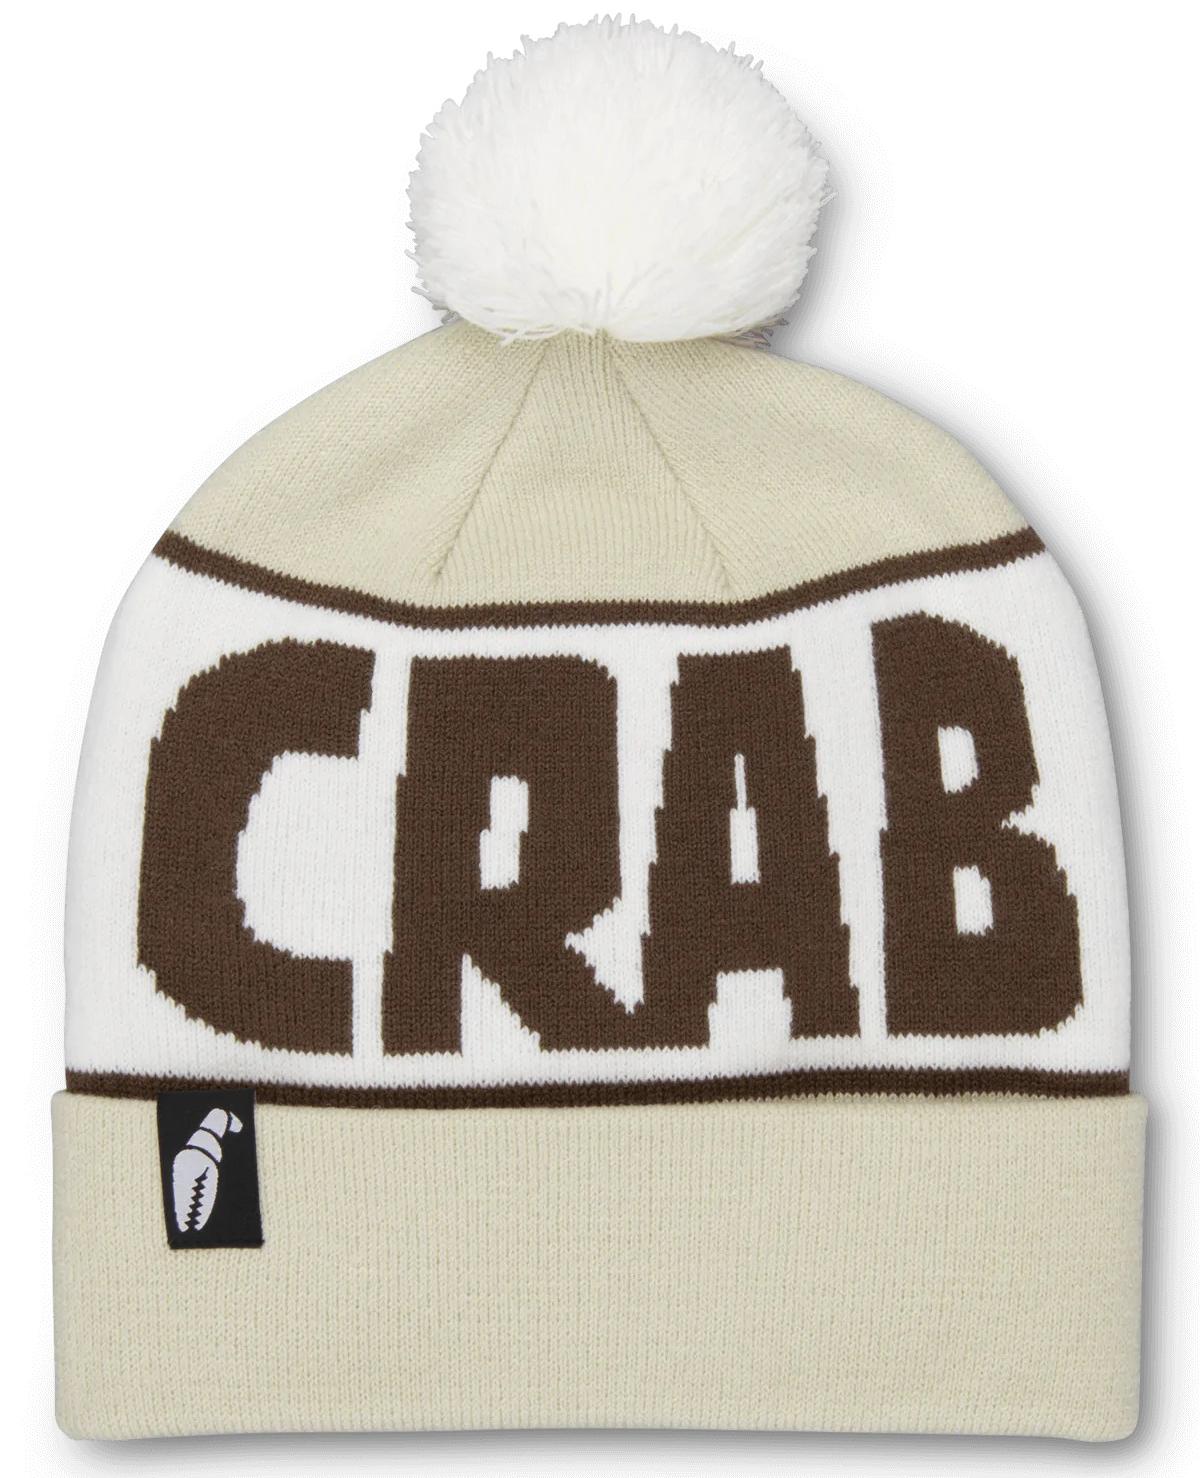 Шапка бини мужская CrabGrab Pom бежевый, коричневый , One Size